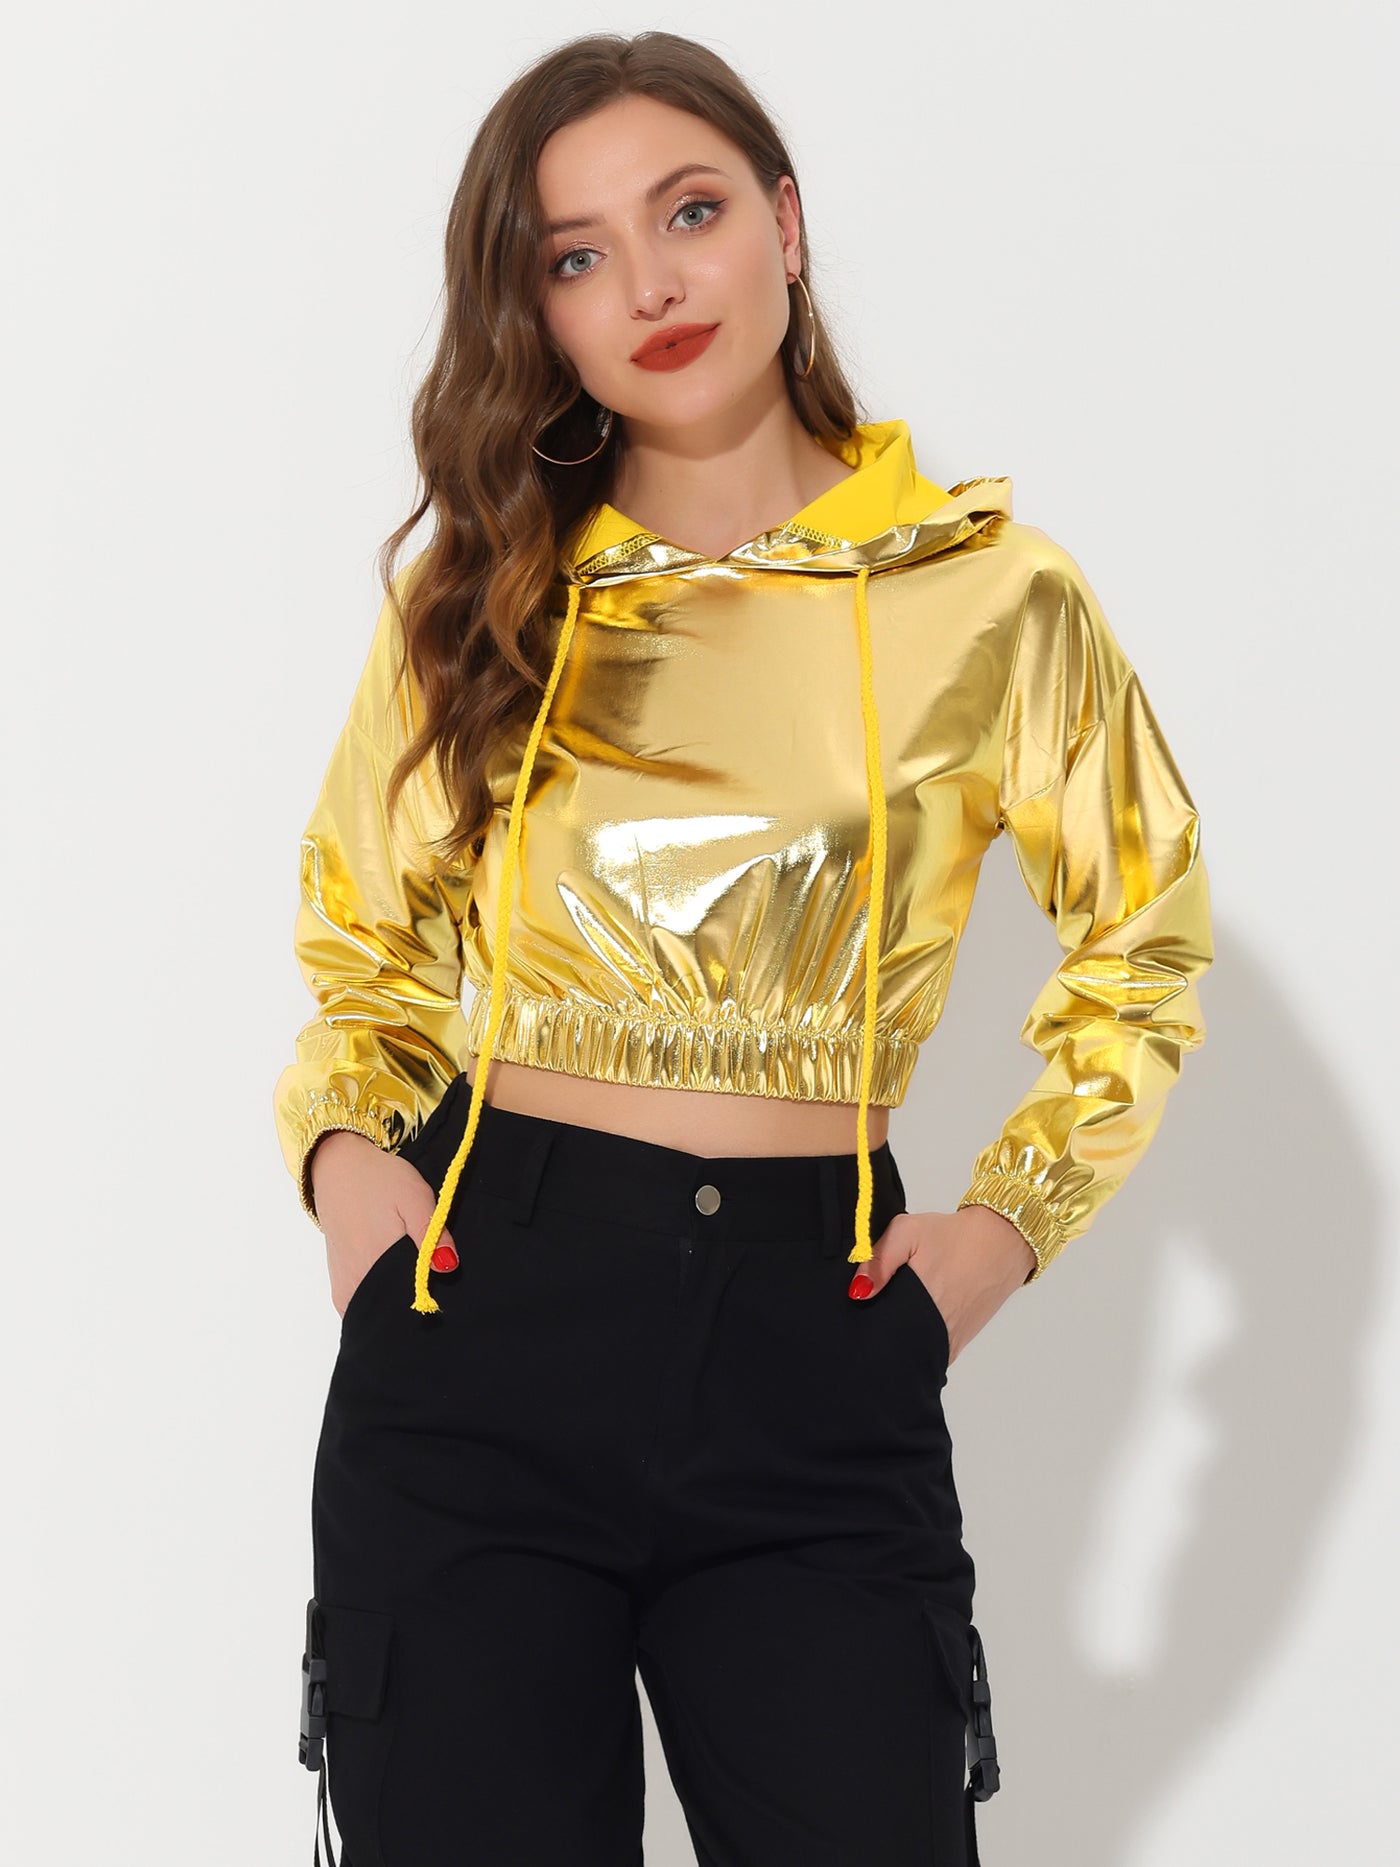 Allegra K Crop Top Hoodies Holographic Shiny Metallic SweatShirt